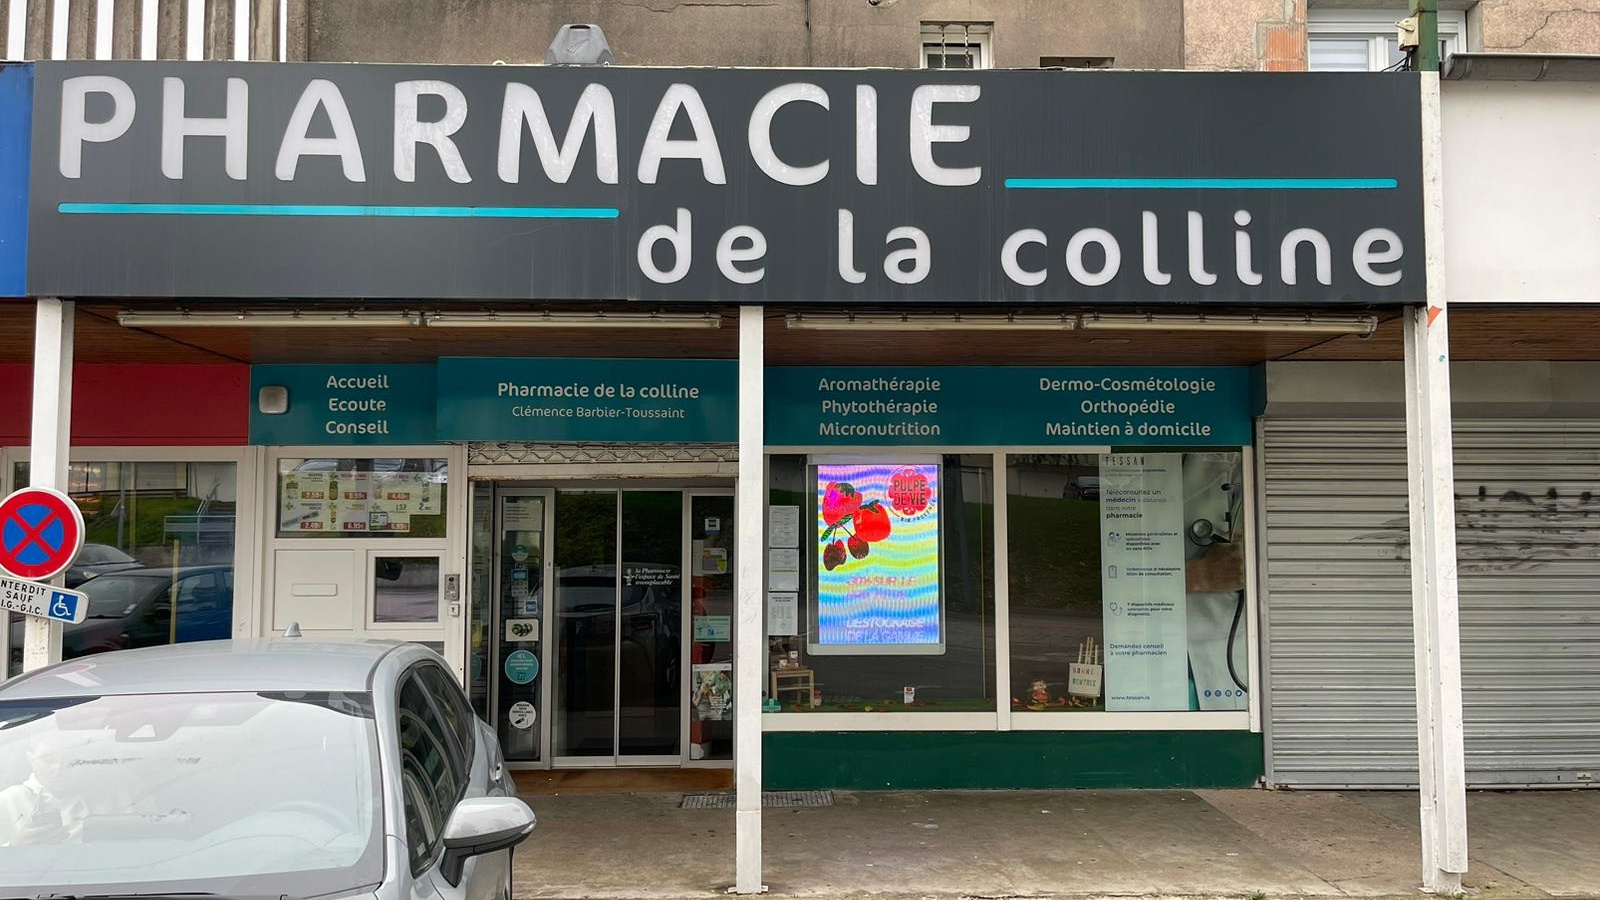 Magasin Pharmacie de la Carrière/Colline/Wenheck - Saint-Avold (57500) Visuel 1